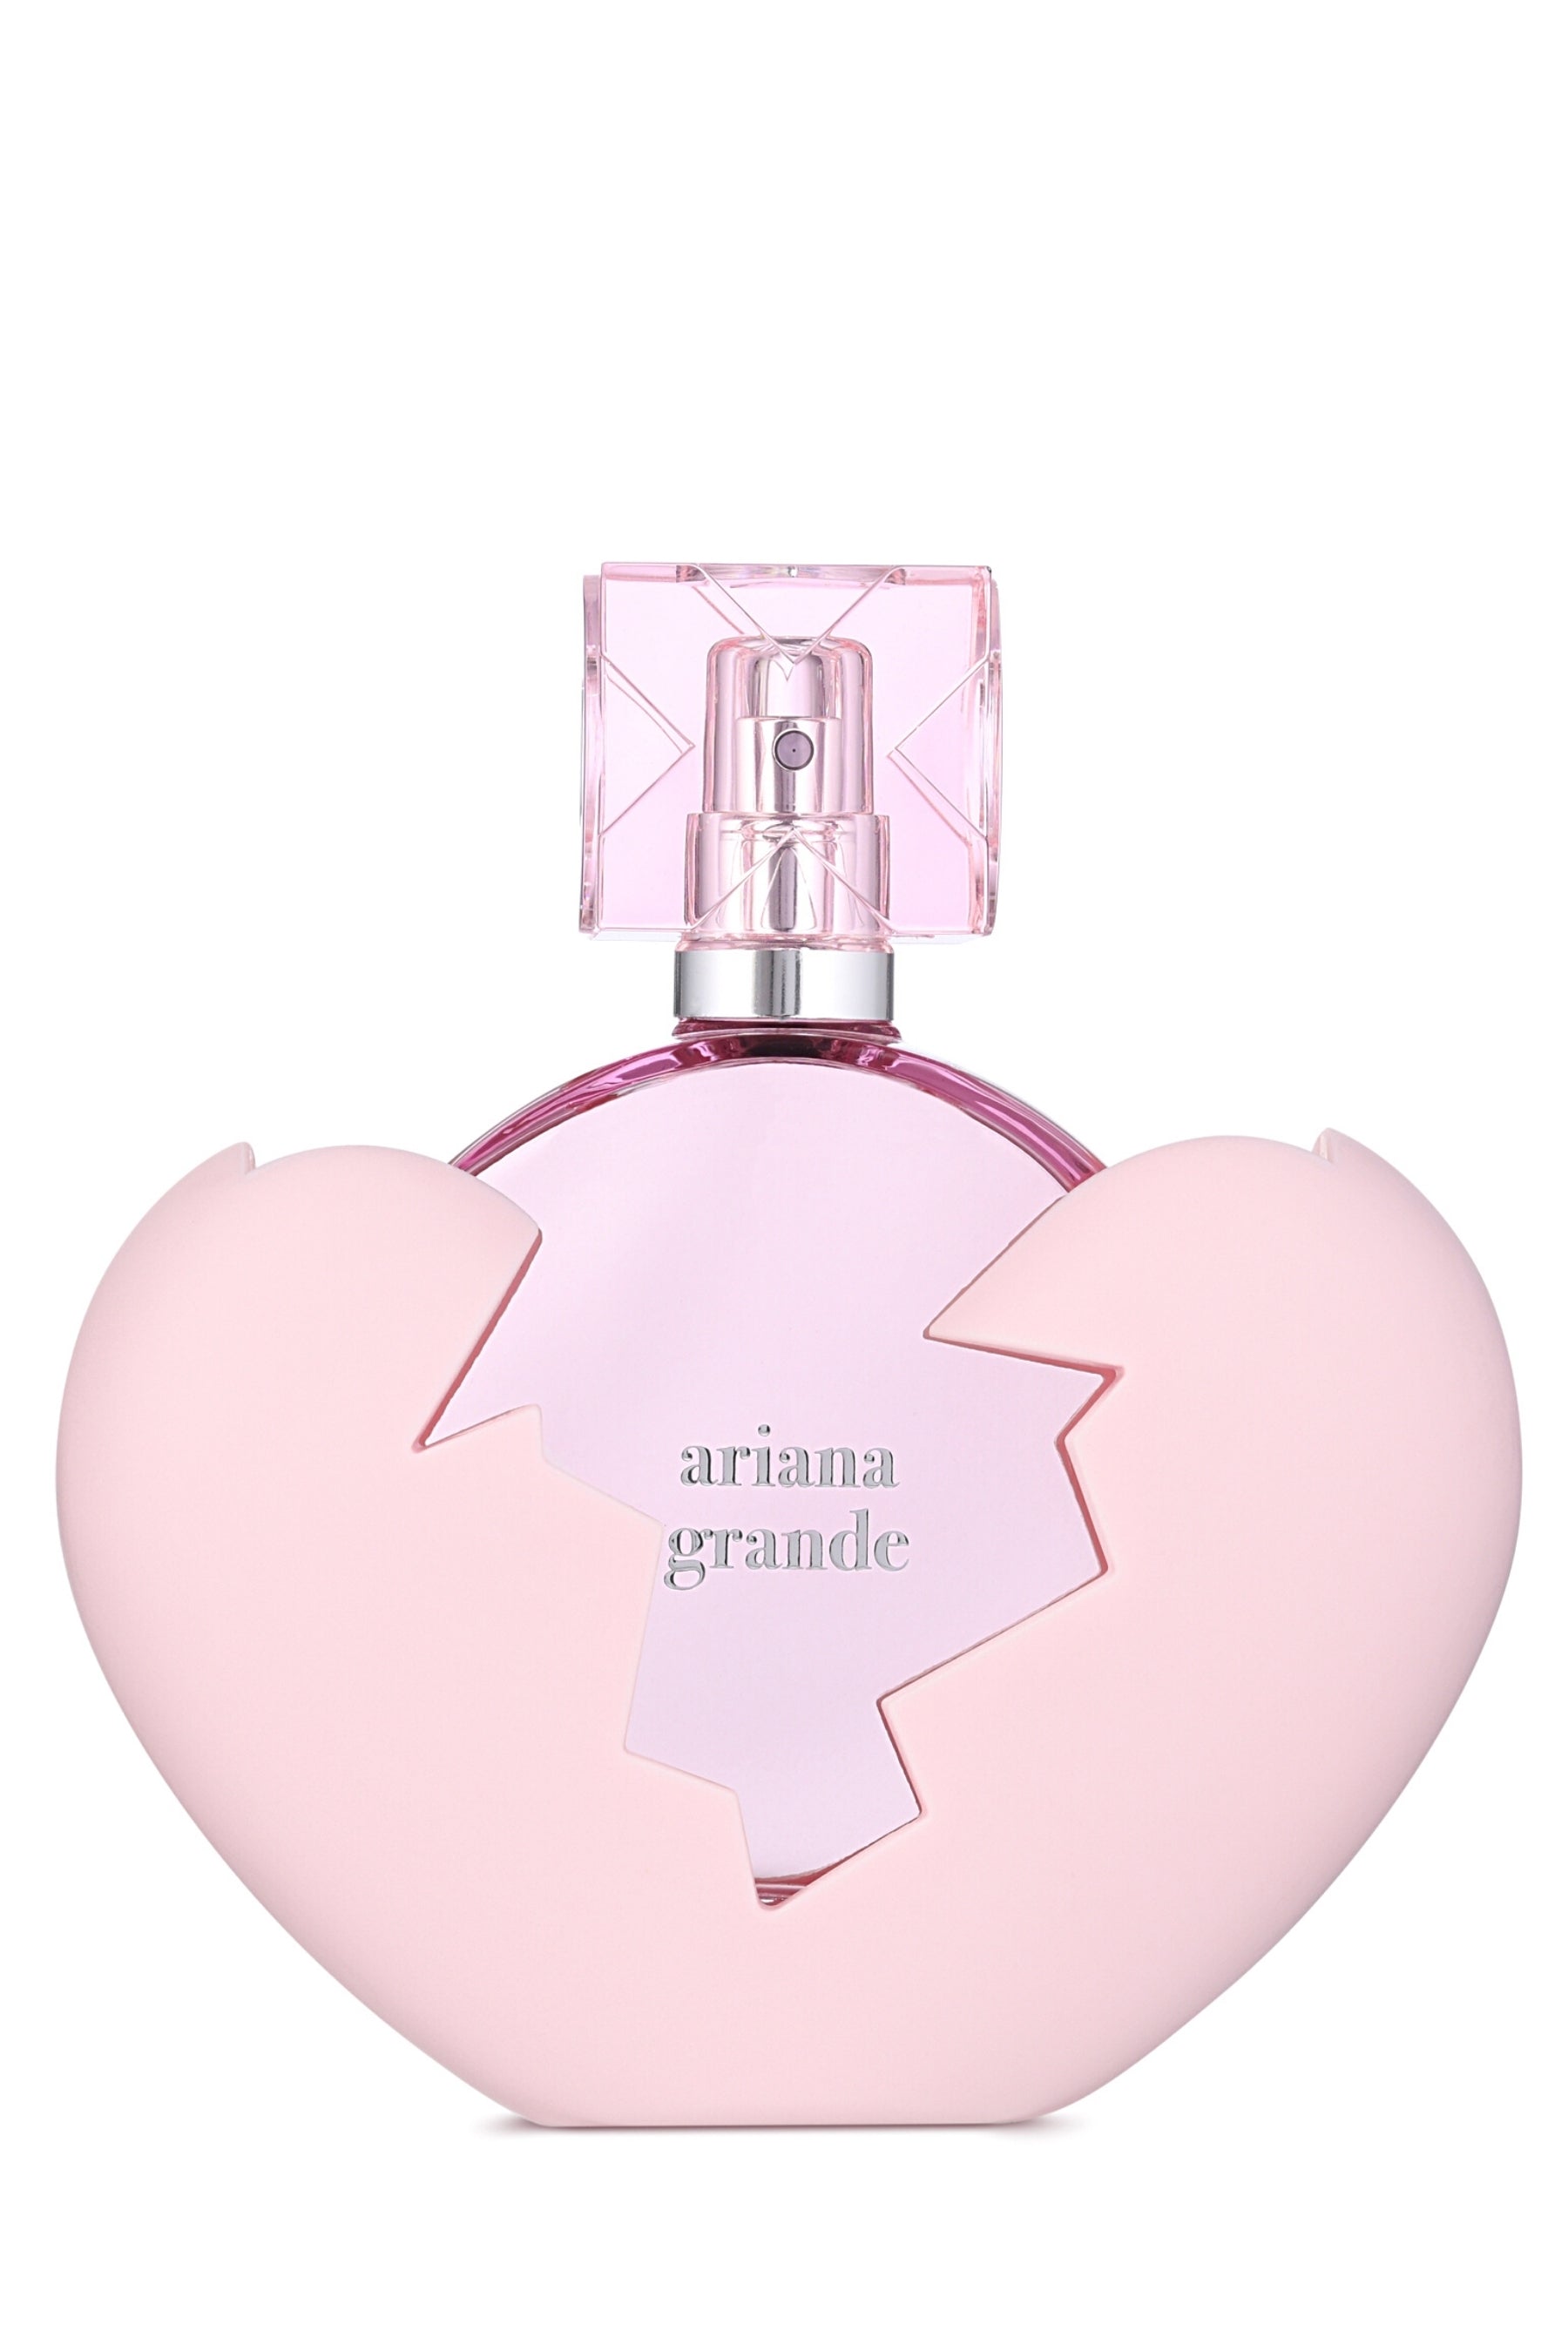 Ariana Grande | Thank U Next Eau de Parfum